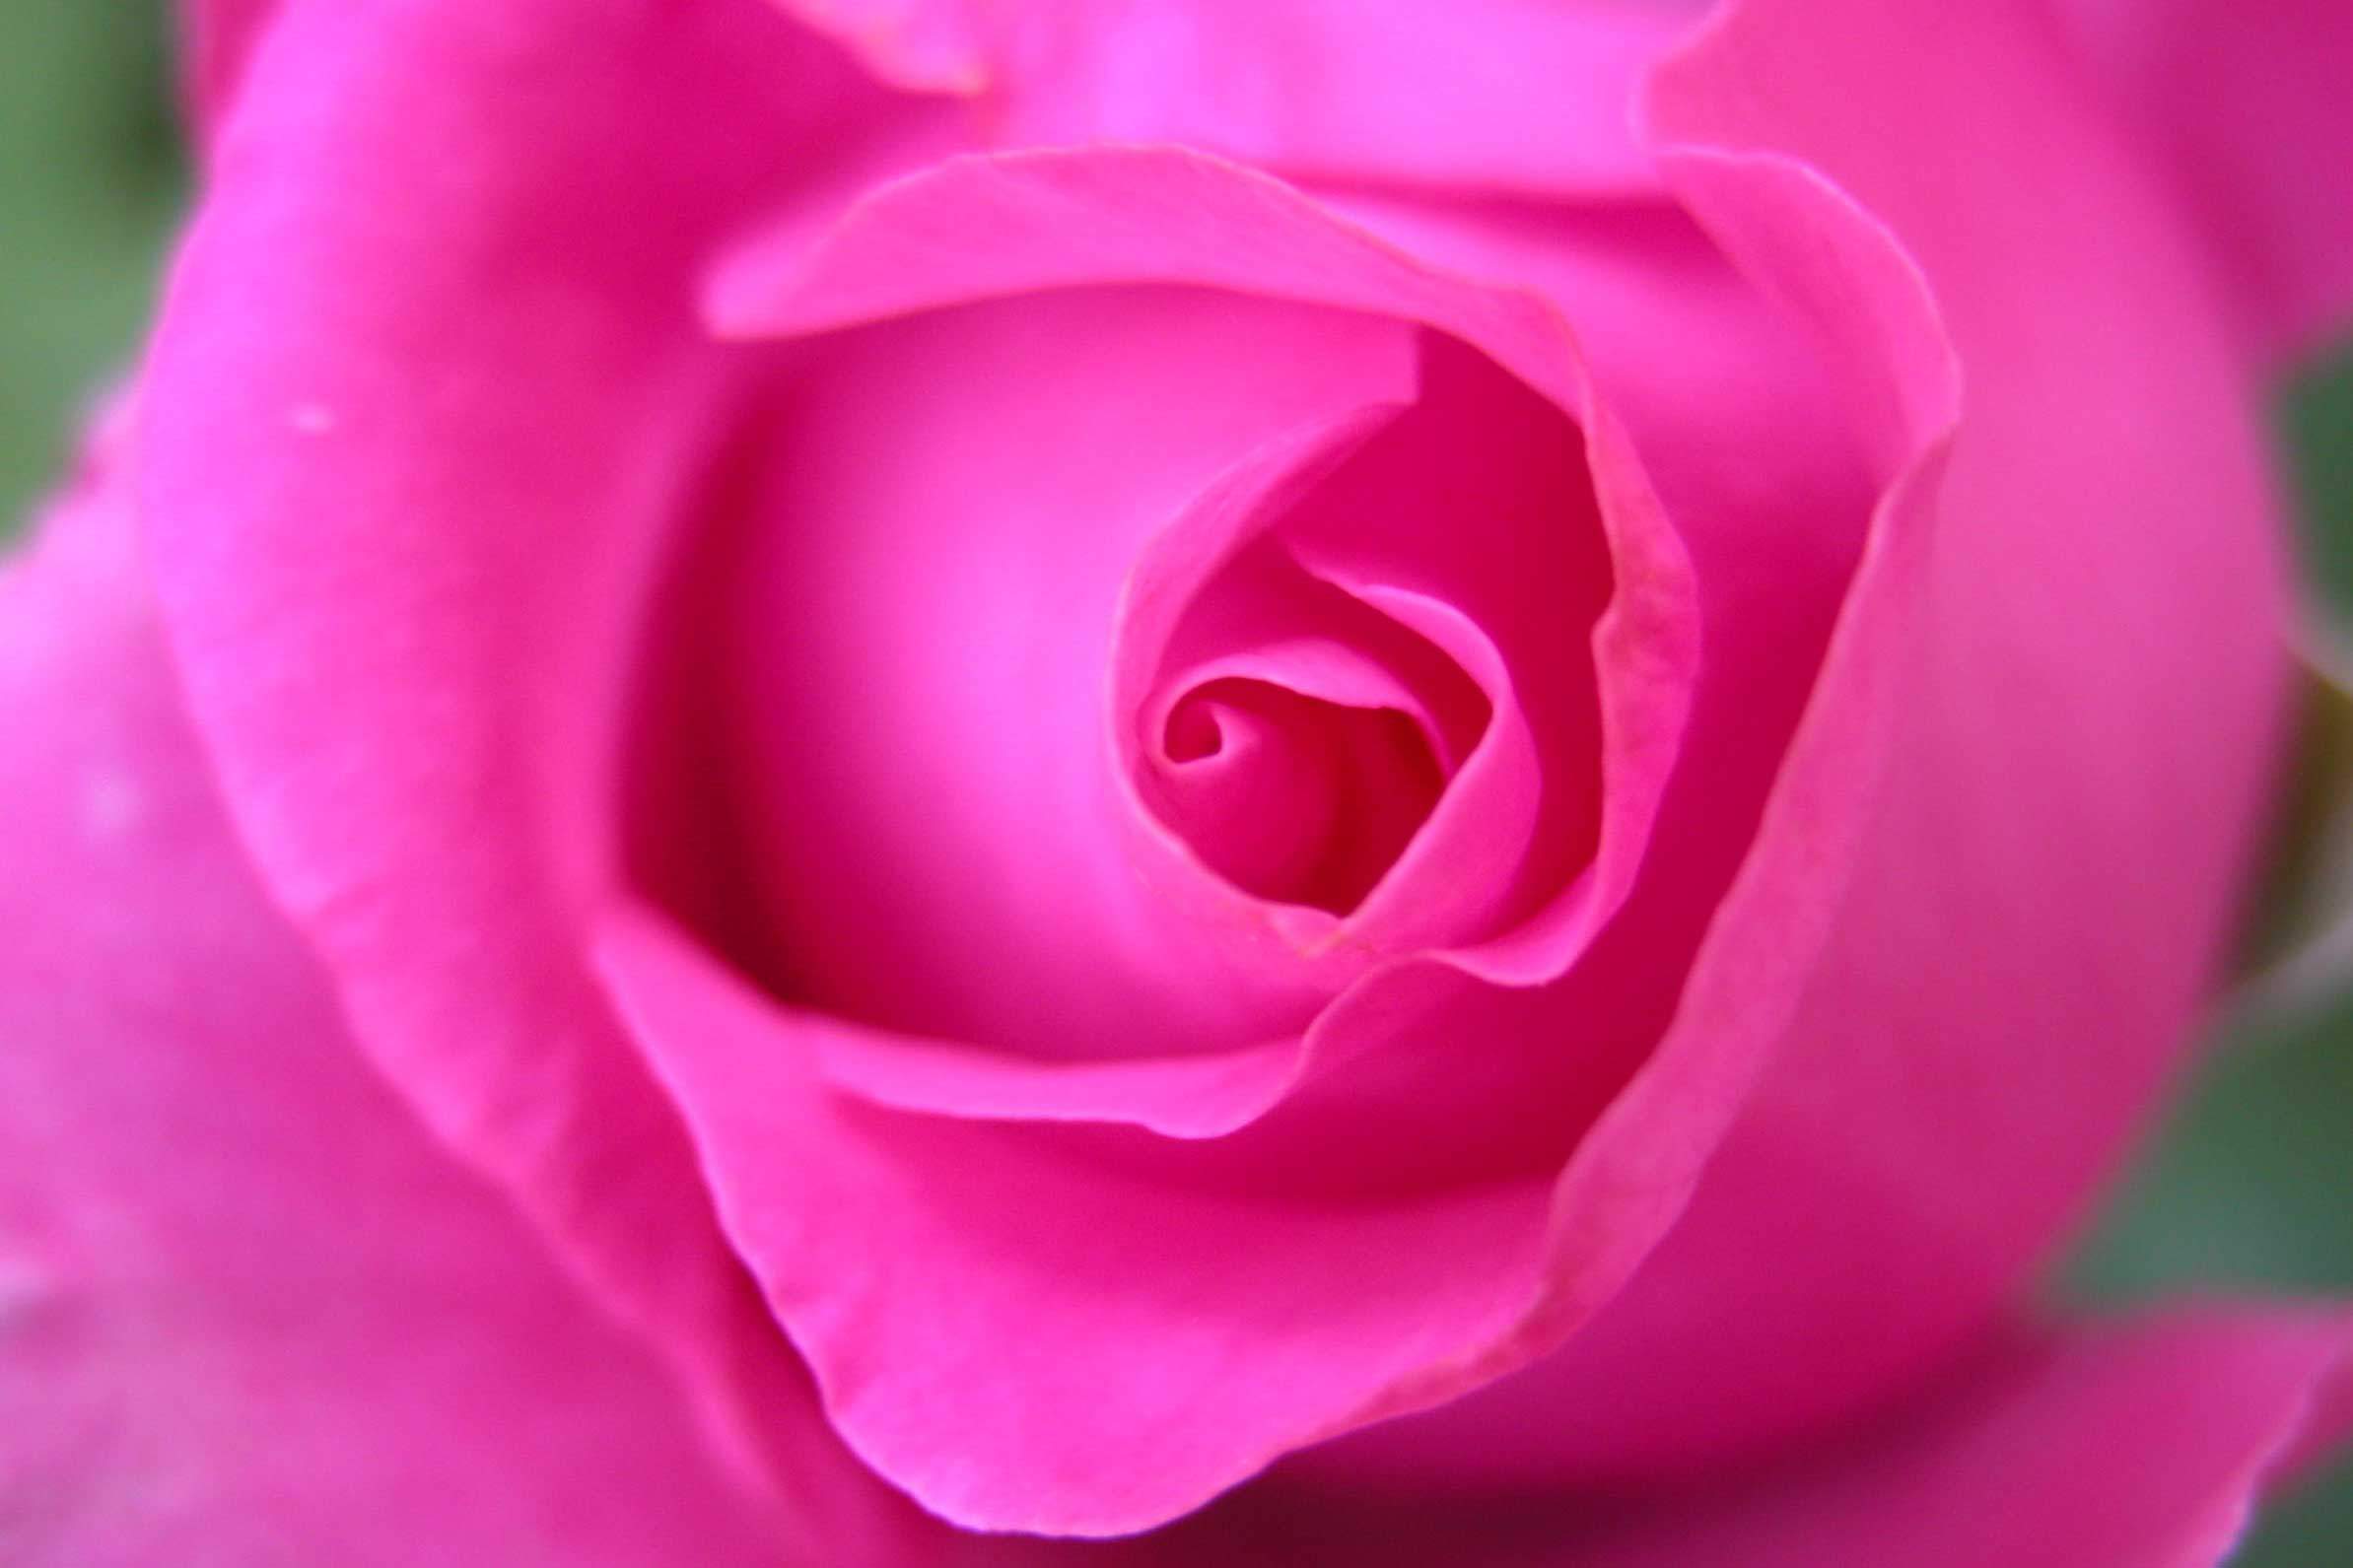 close-up of pink rose